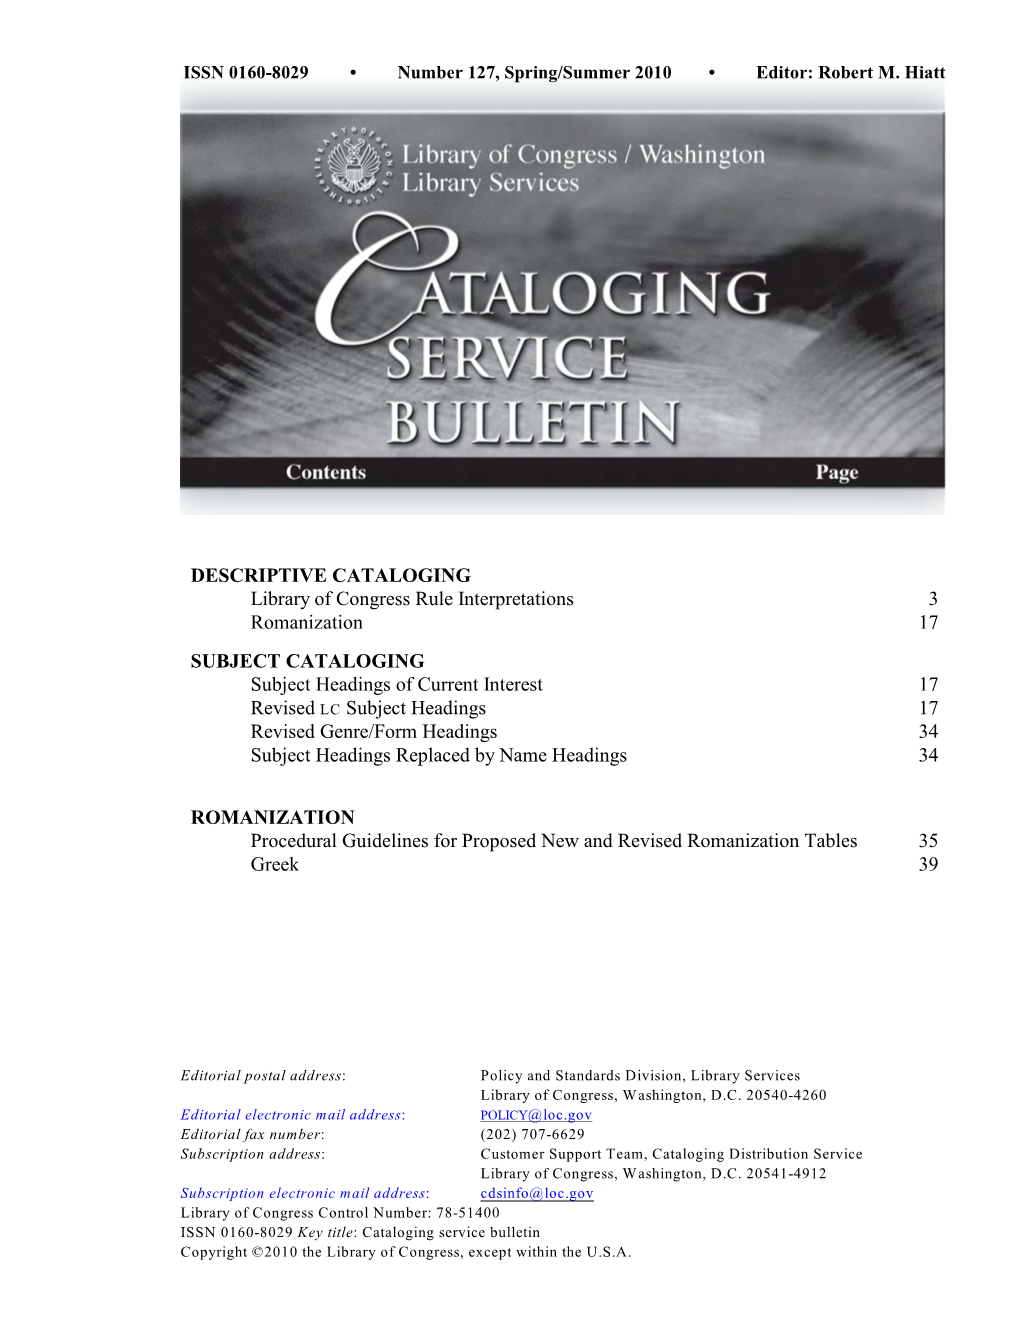 Cataloging Service Bulletin 127, Spring/Summer 2010